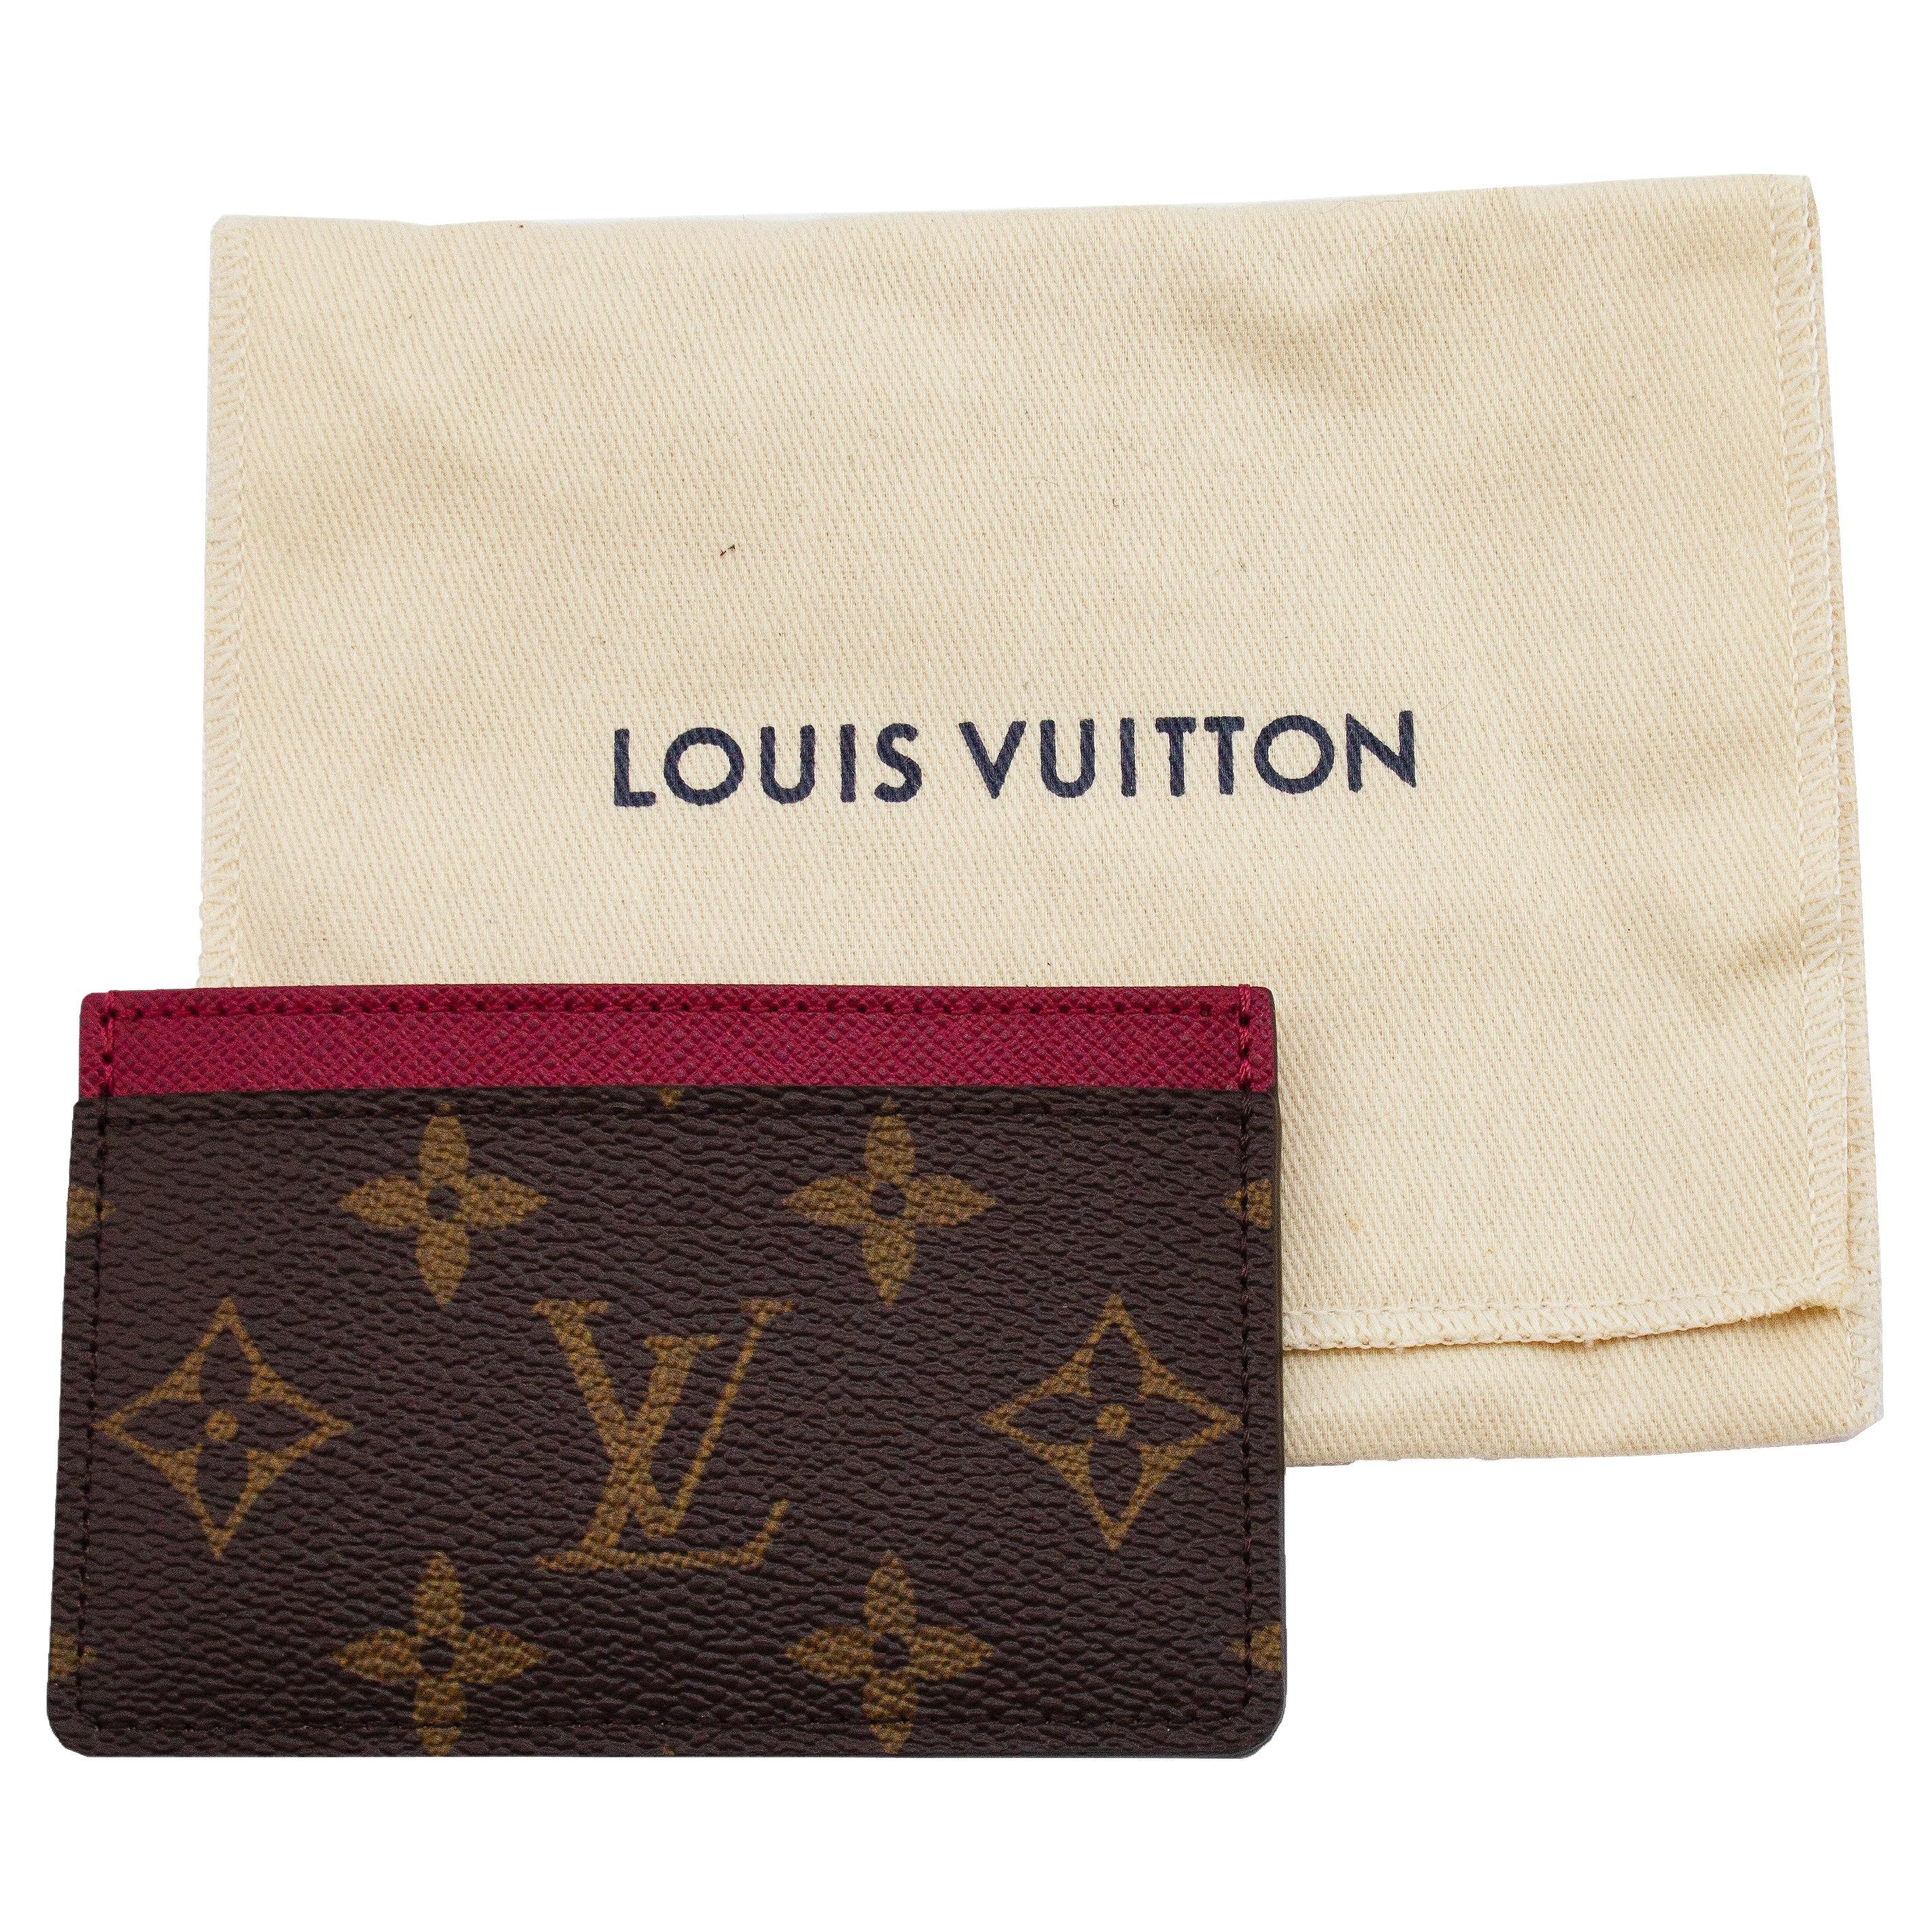 2000s Louis Vuitton Monogram Card Case For Sale